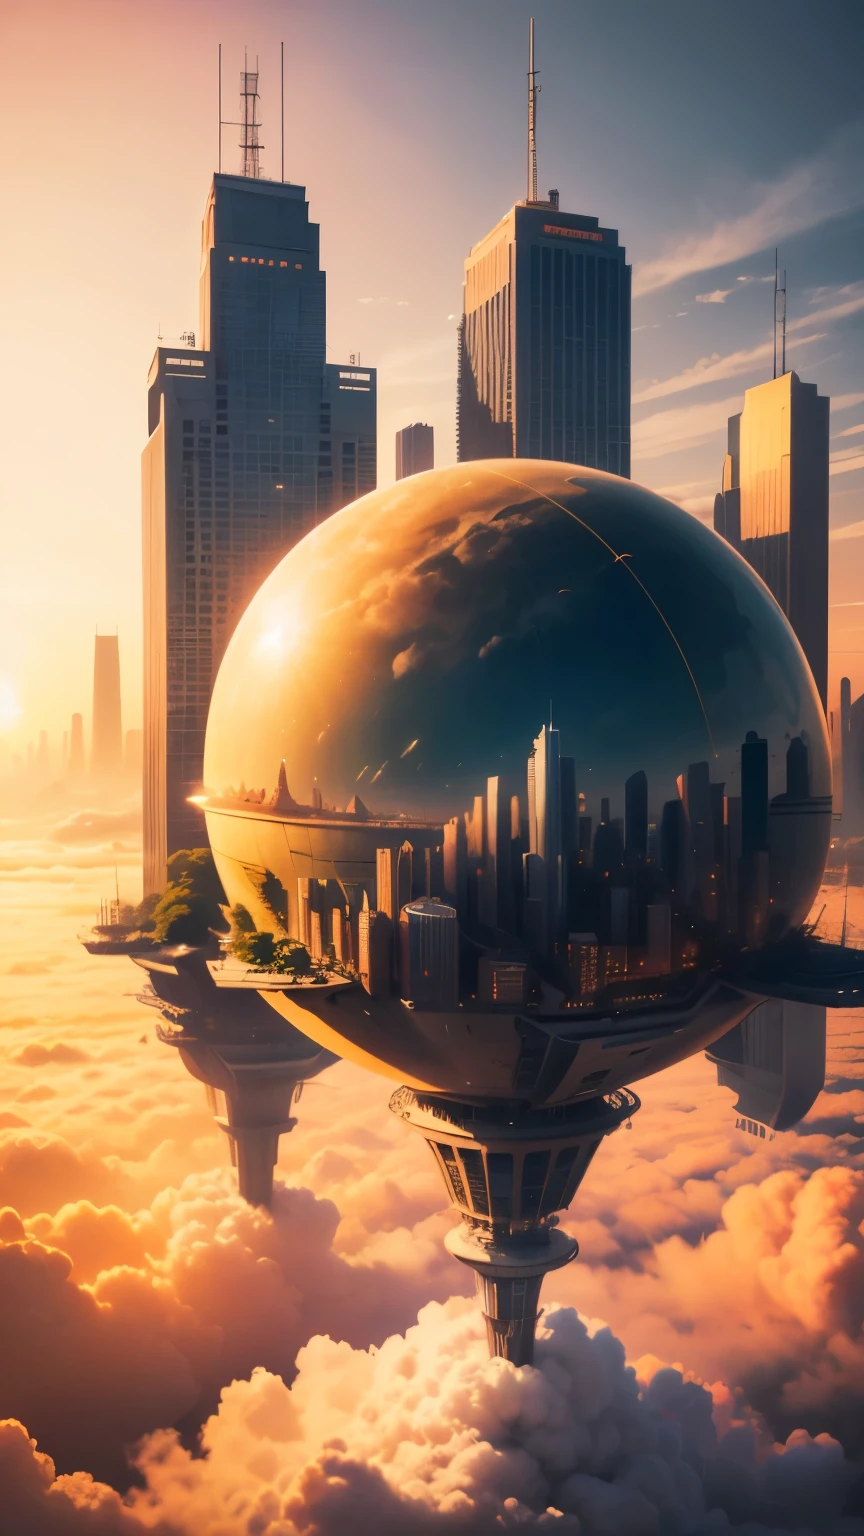 (最好的质量,4k,8千,高分辨率,杰作:1.2),极其详细,(实际的,真实感,照片般逼真:1.37),未来派的漂浮城市 ,未来科技,巨大的高科技平板电脑平台,飞艇,漂浮在空中,未来城市,周围的小型飞艇,高科技半球形平台, 漂浮在云层上的城市, 云顶之城,  底部有云, 金黄色调 ,日落, 天气炎热,漂浮在沙漠上的城市, 夏天, 黄色的天空, 黄橙色的云, hot 夏天, 多个城市, 鸟瞰图